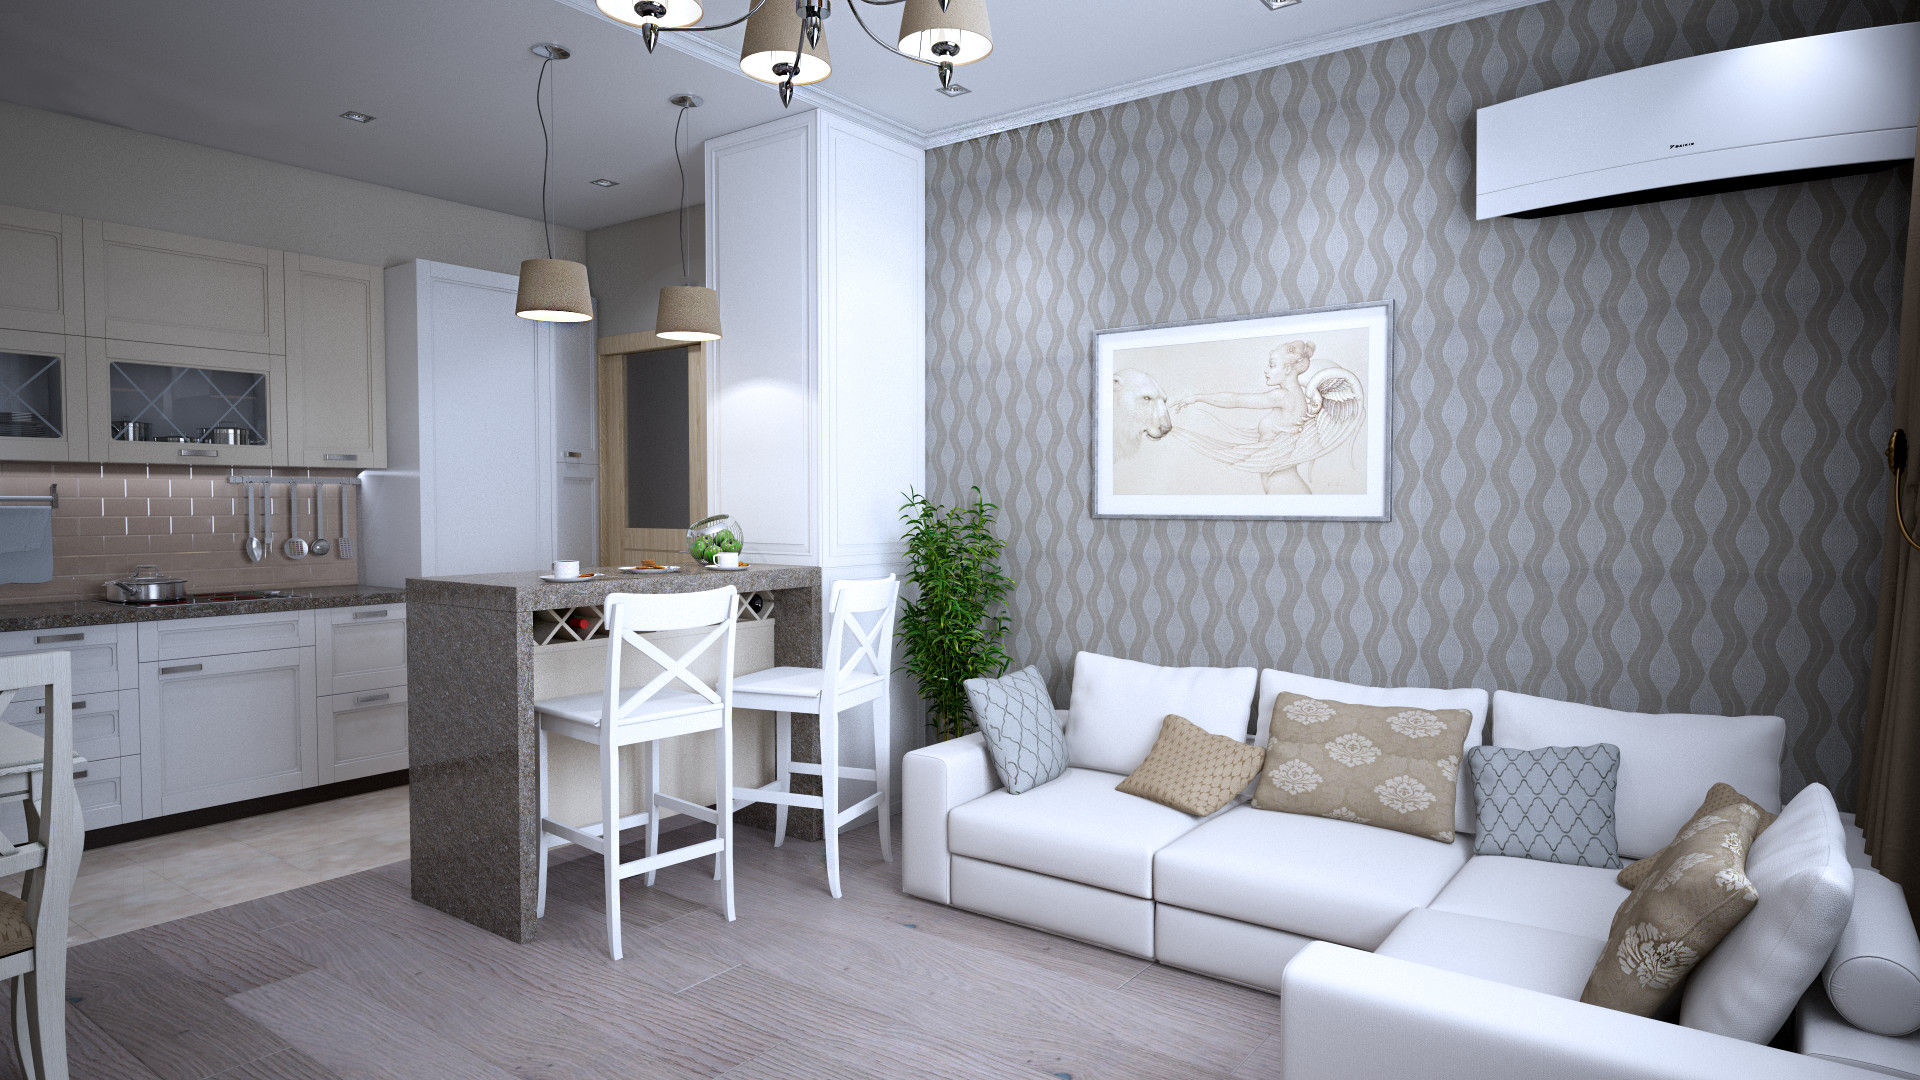 Дизайн-проект квартиры в г. Москве, SmaginVladimir SmaginVladimir Classic style dining room